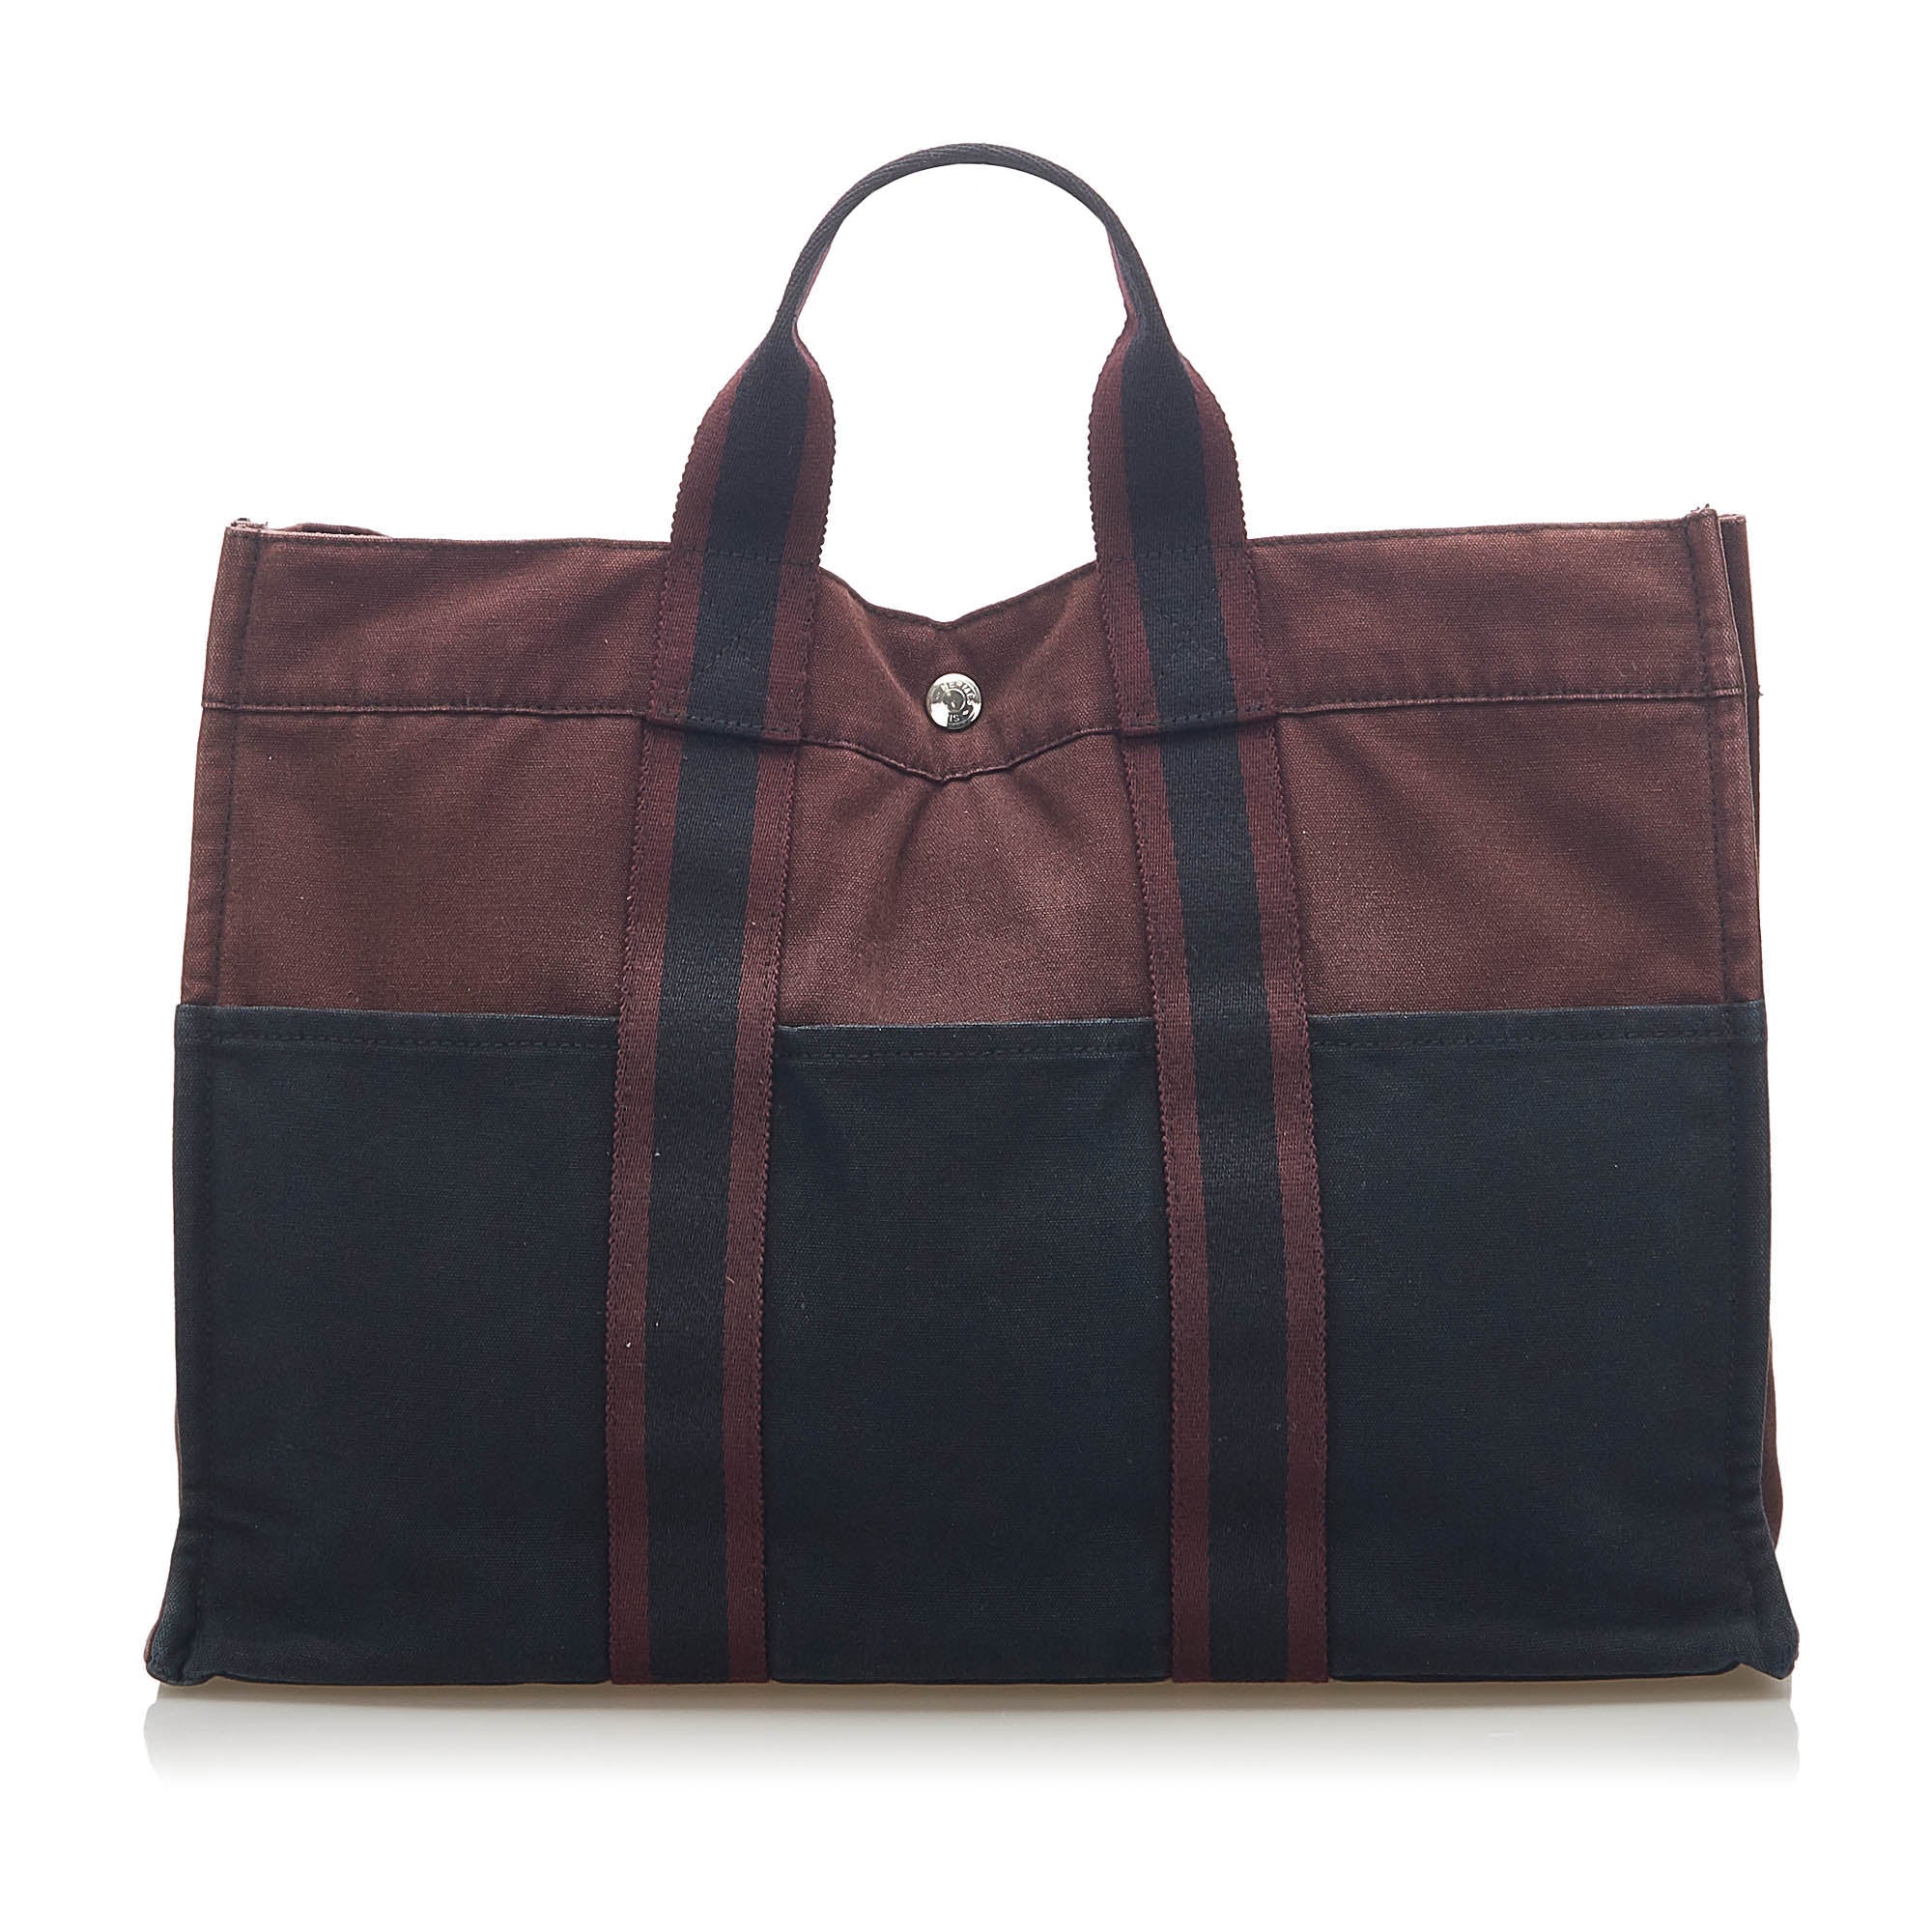 Hermes Rouge Vif Epsom Leather Evelyne TPM Bag . Excellent